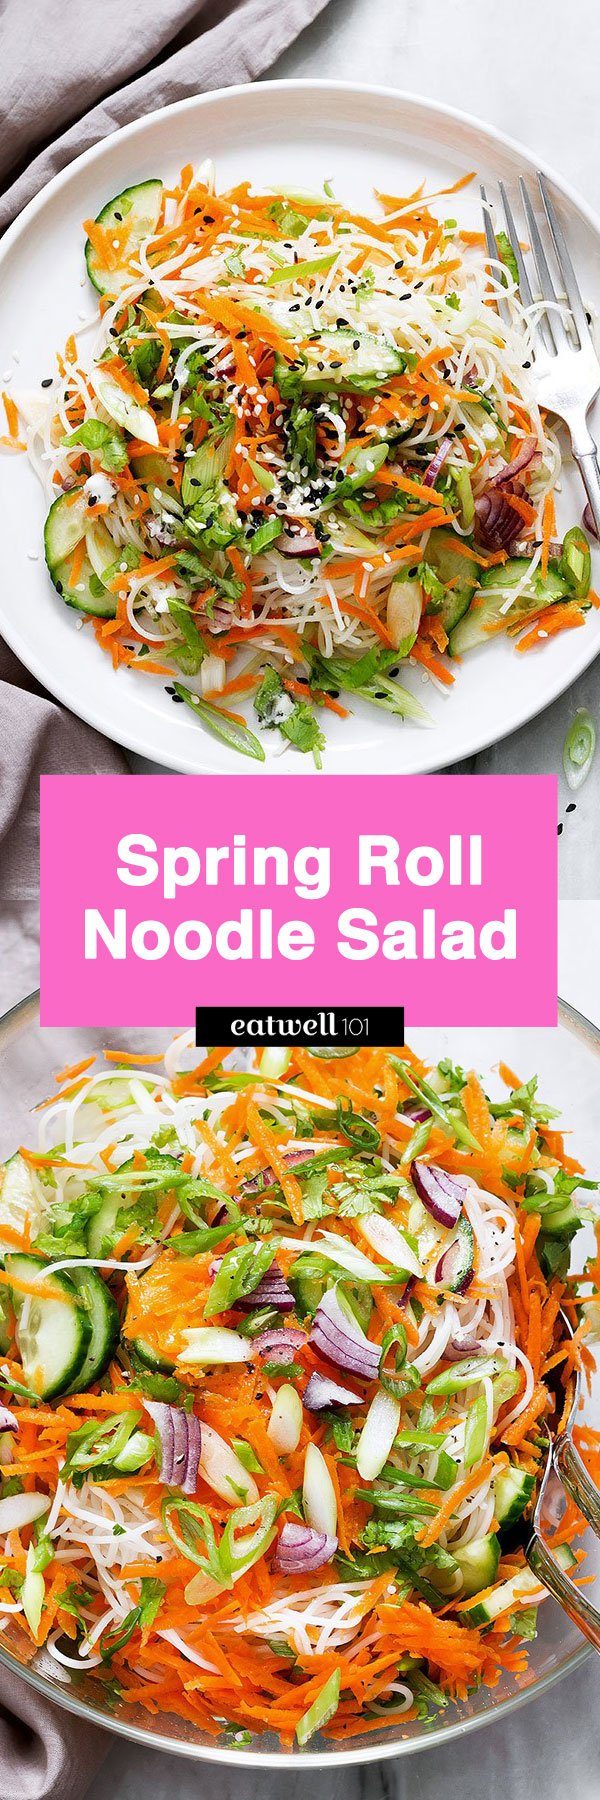 Spring Roll Noodle Salad 1